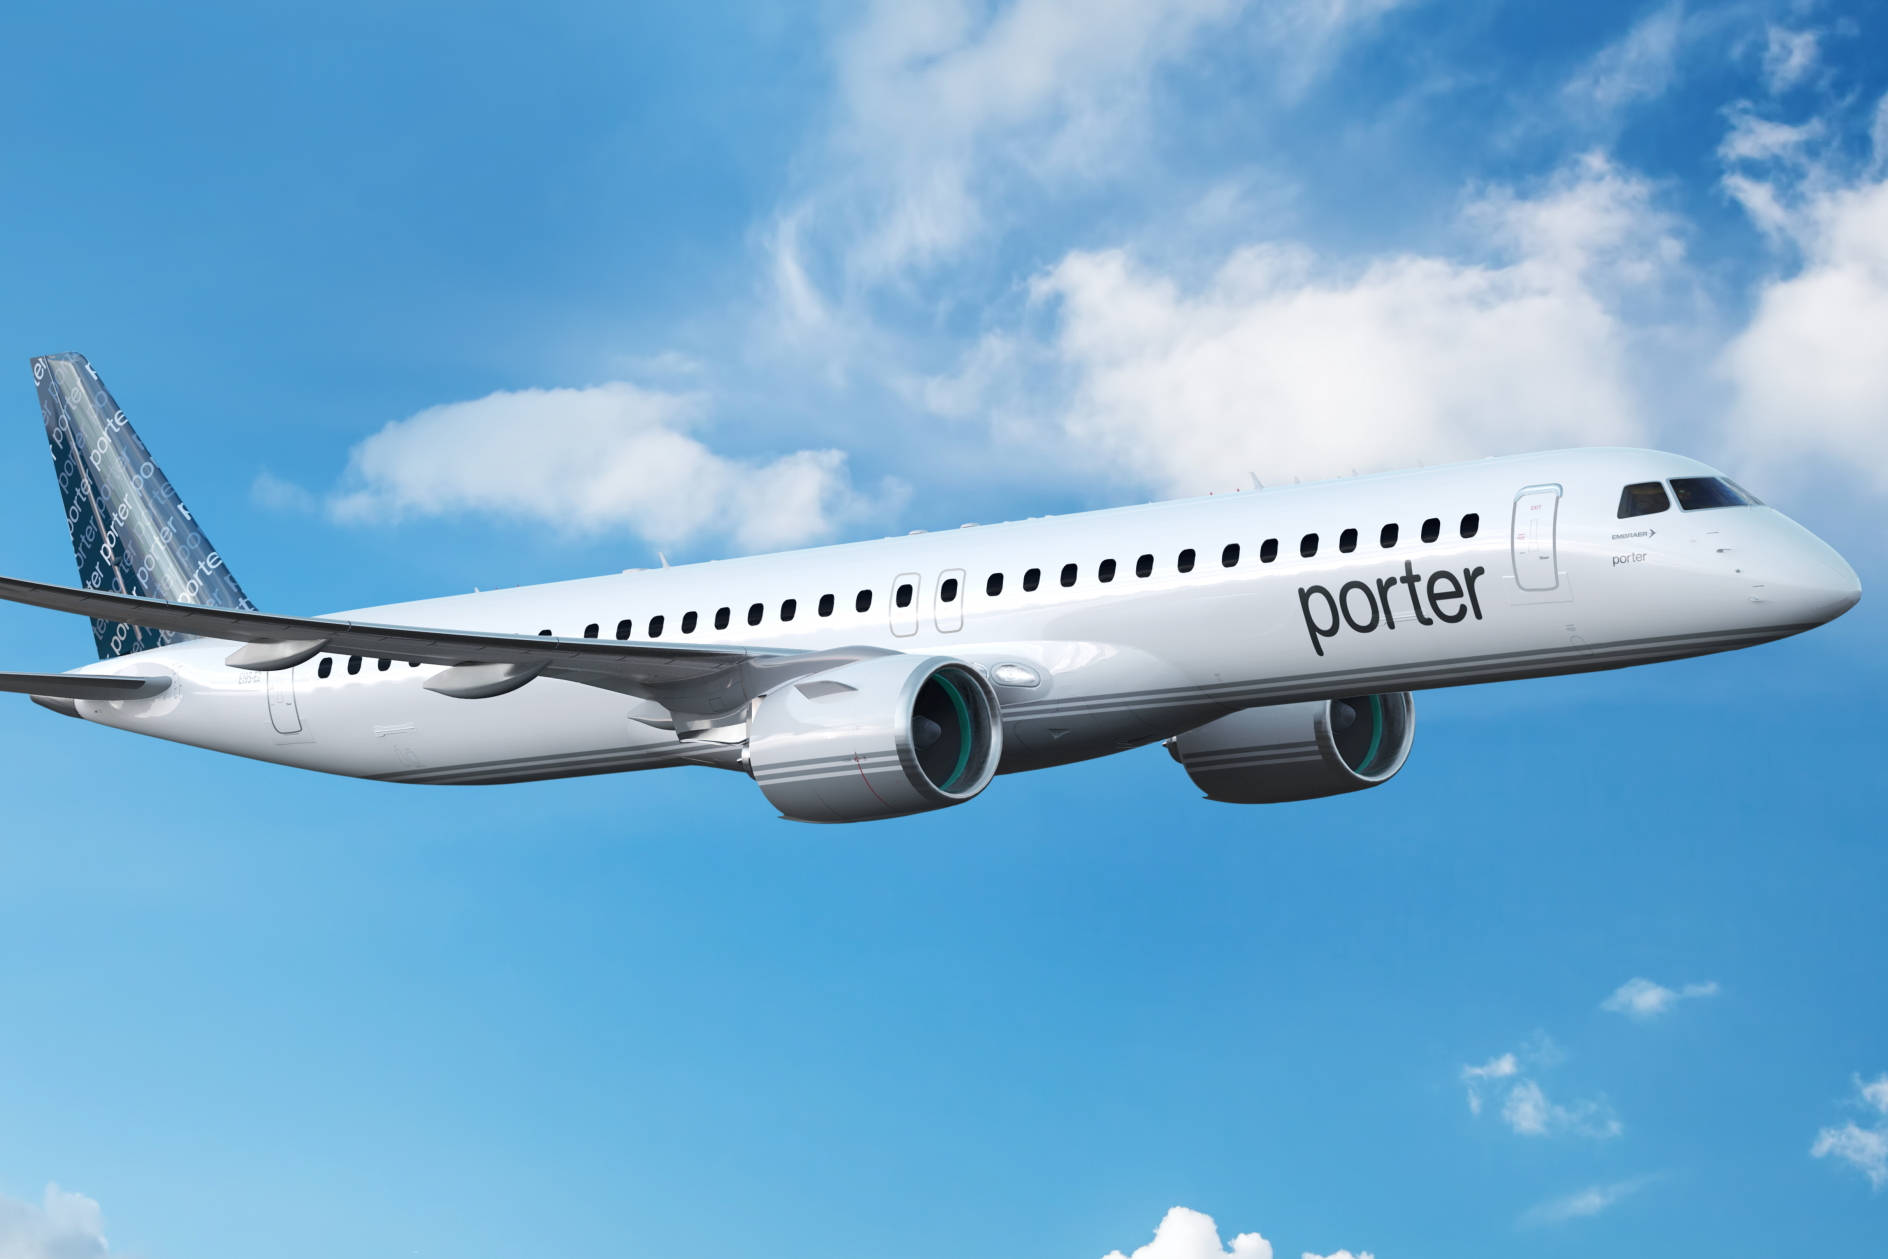 Papelde Parede De Qualidade Para Computador Ou Celular Com O Avião Branco Da Porter Airlines. Papel de Parede